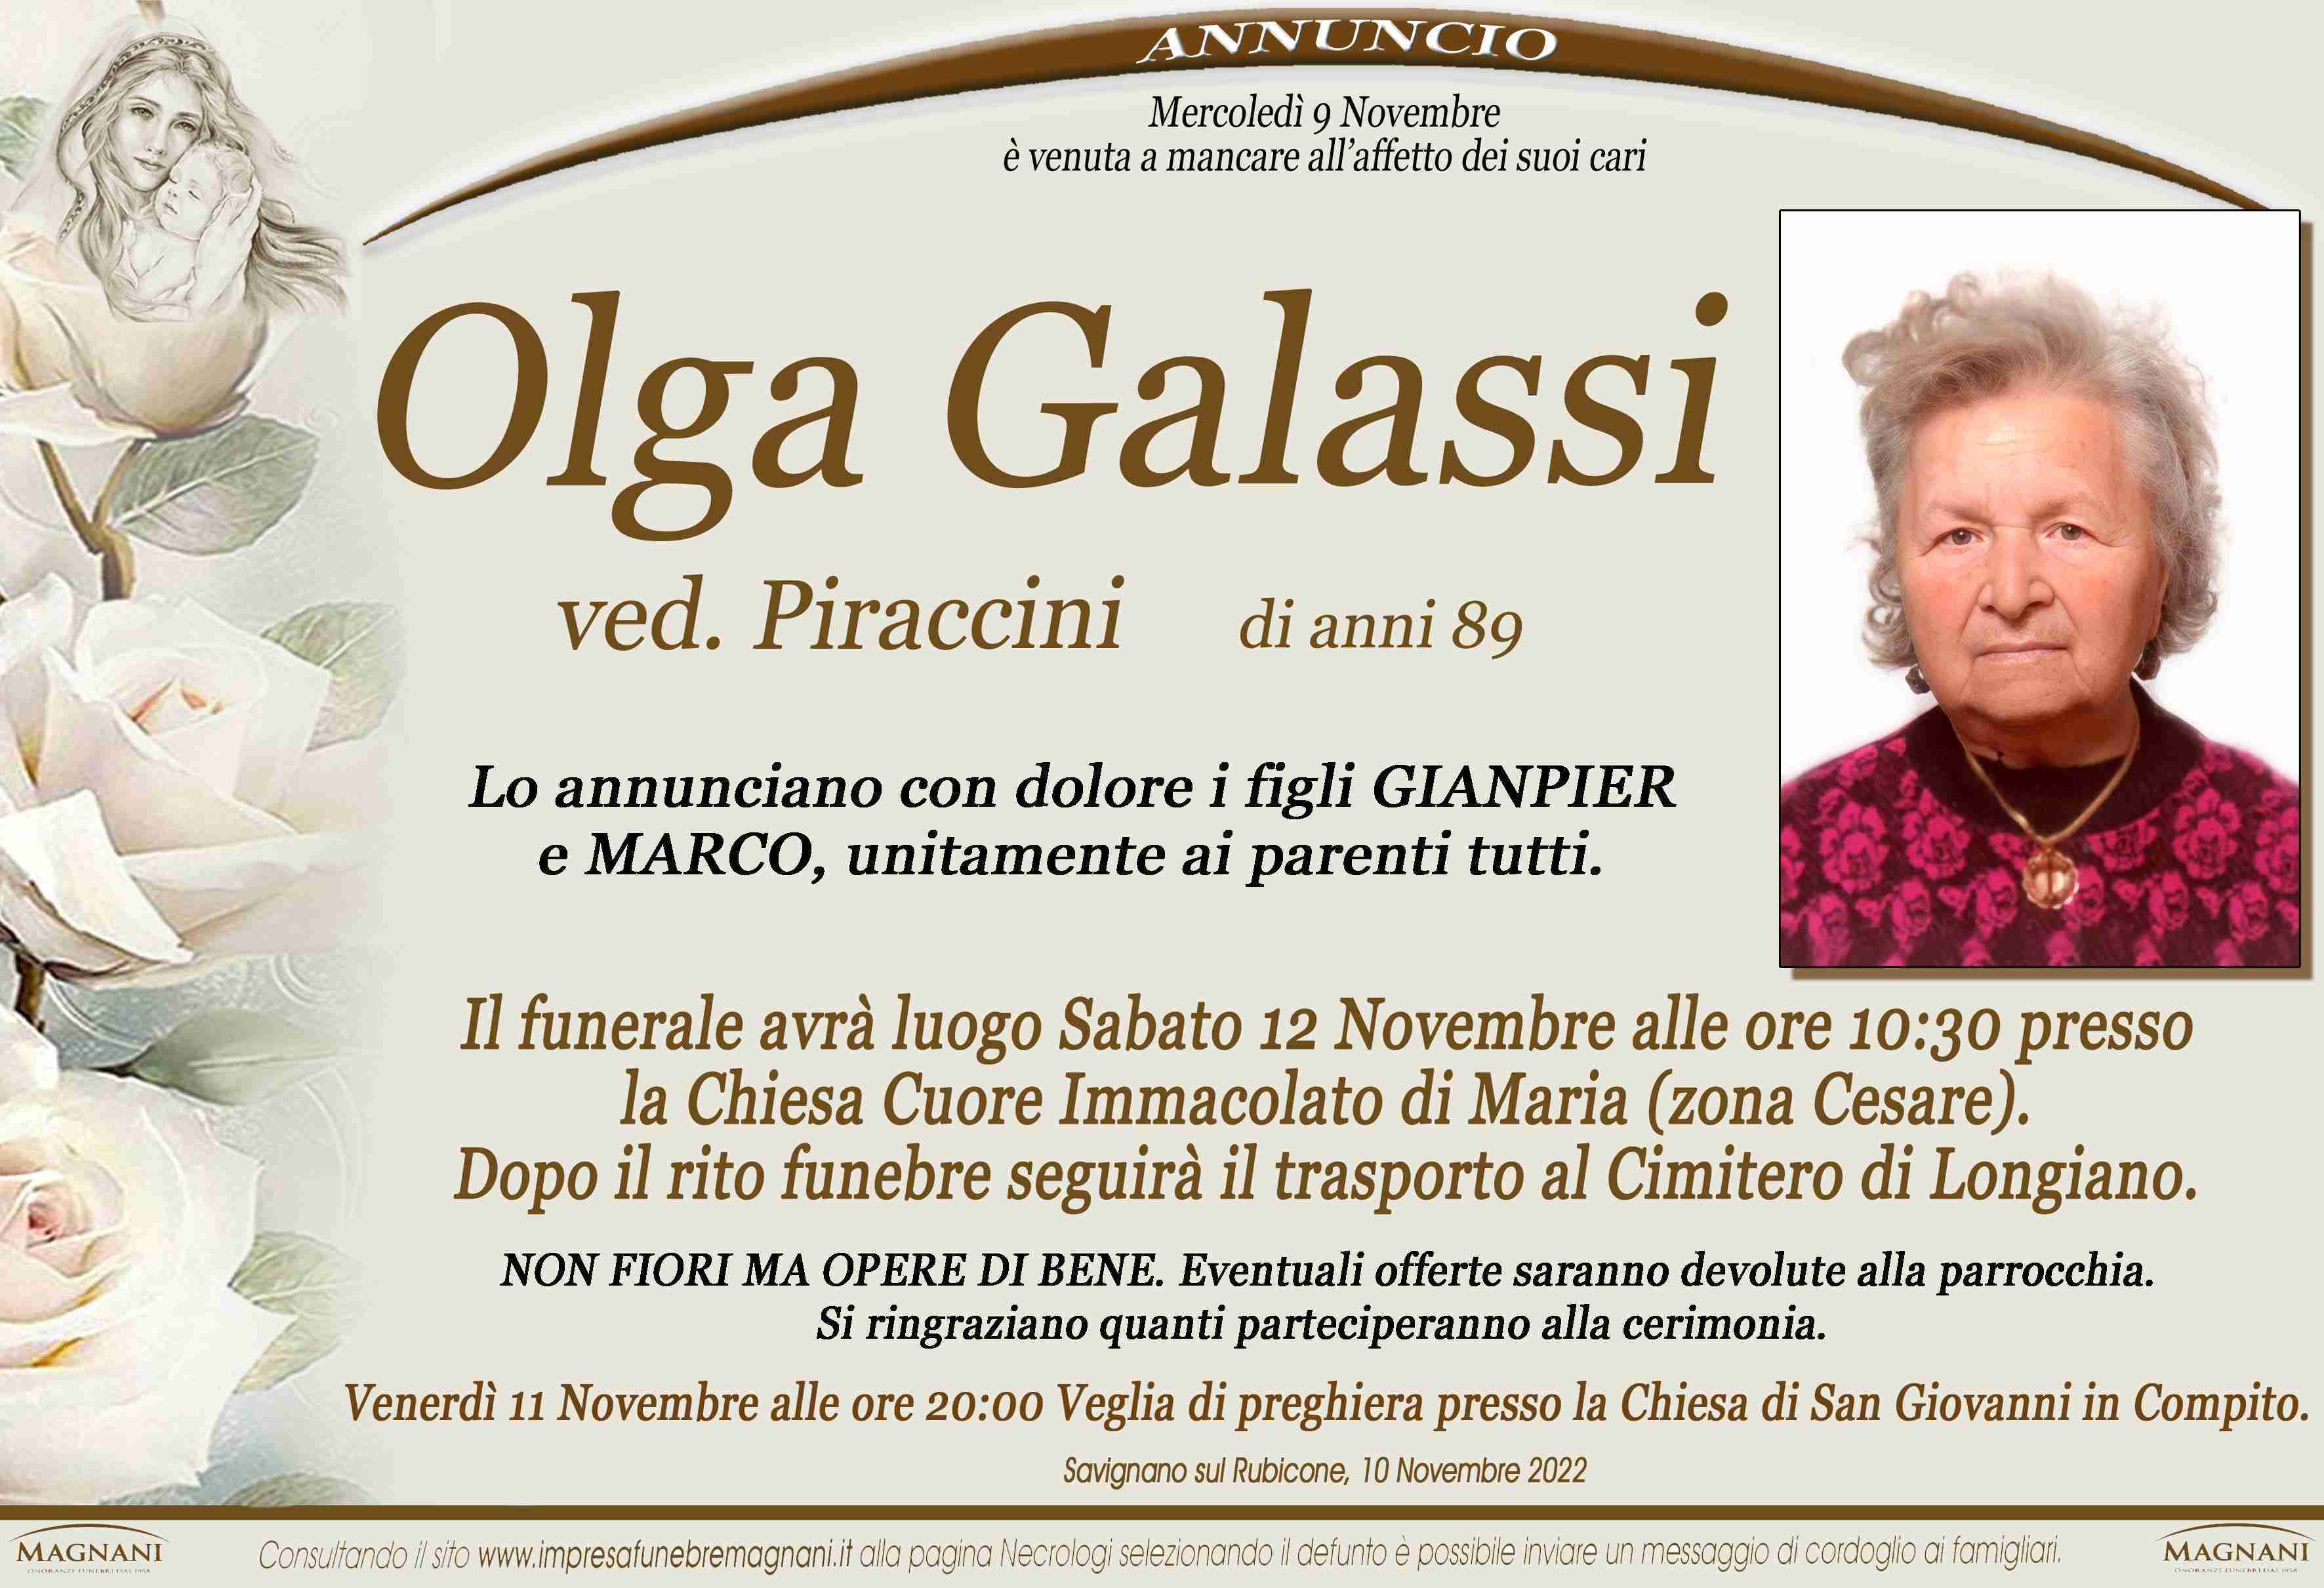 Olga Galassi